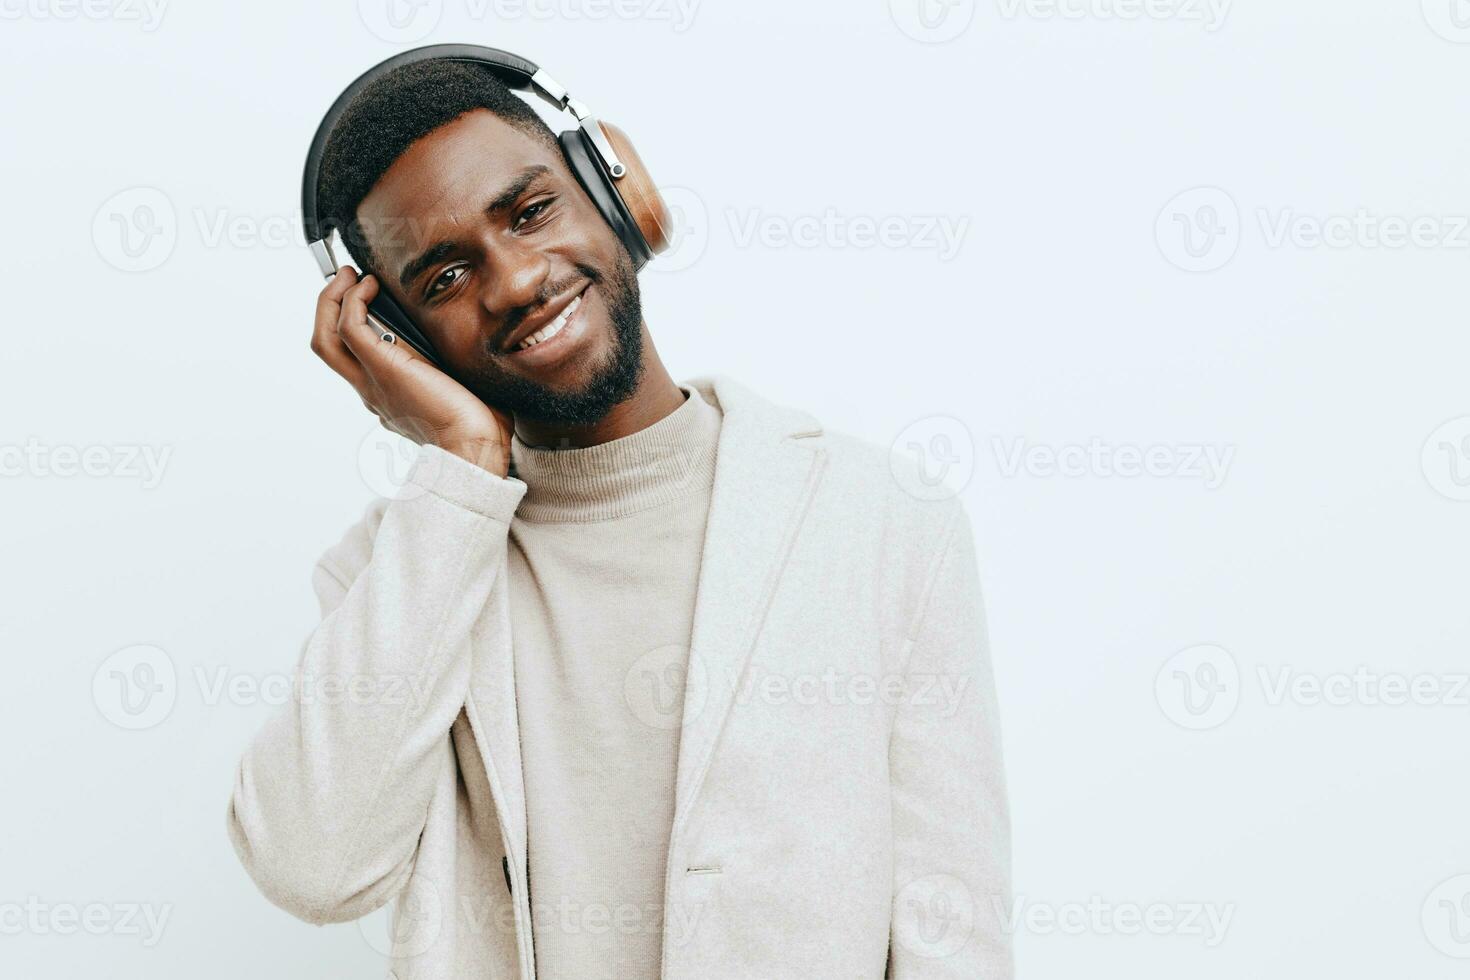 ung man attraktiv dj amerikan hörlurar kille svart afrikansk porträtt bakgrund musik mode foto